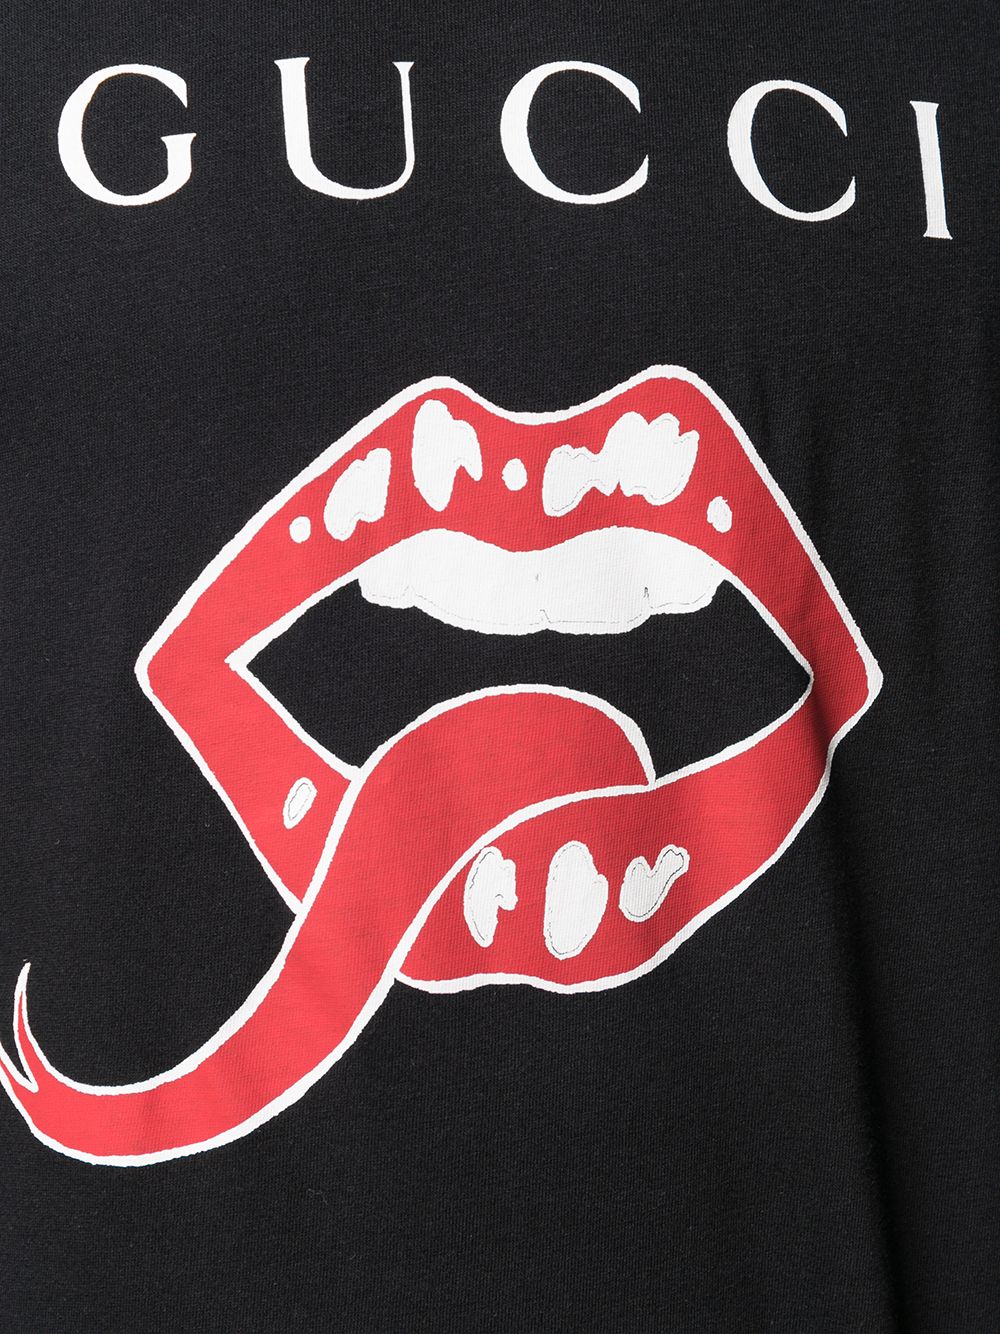 gucci shirt with tongue